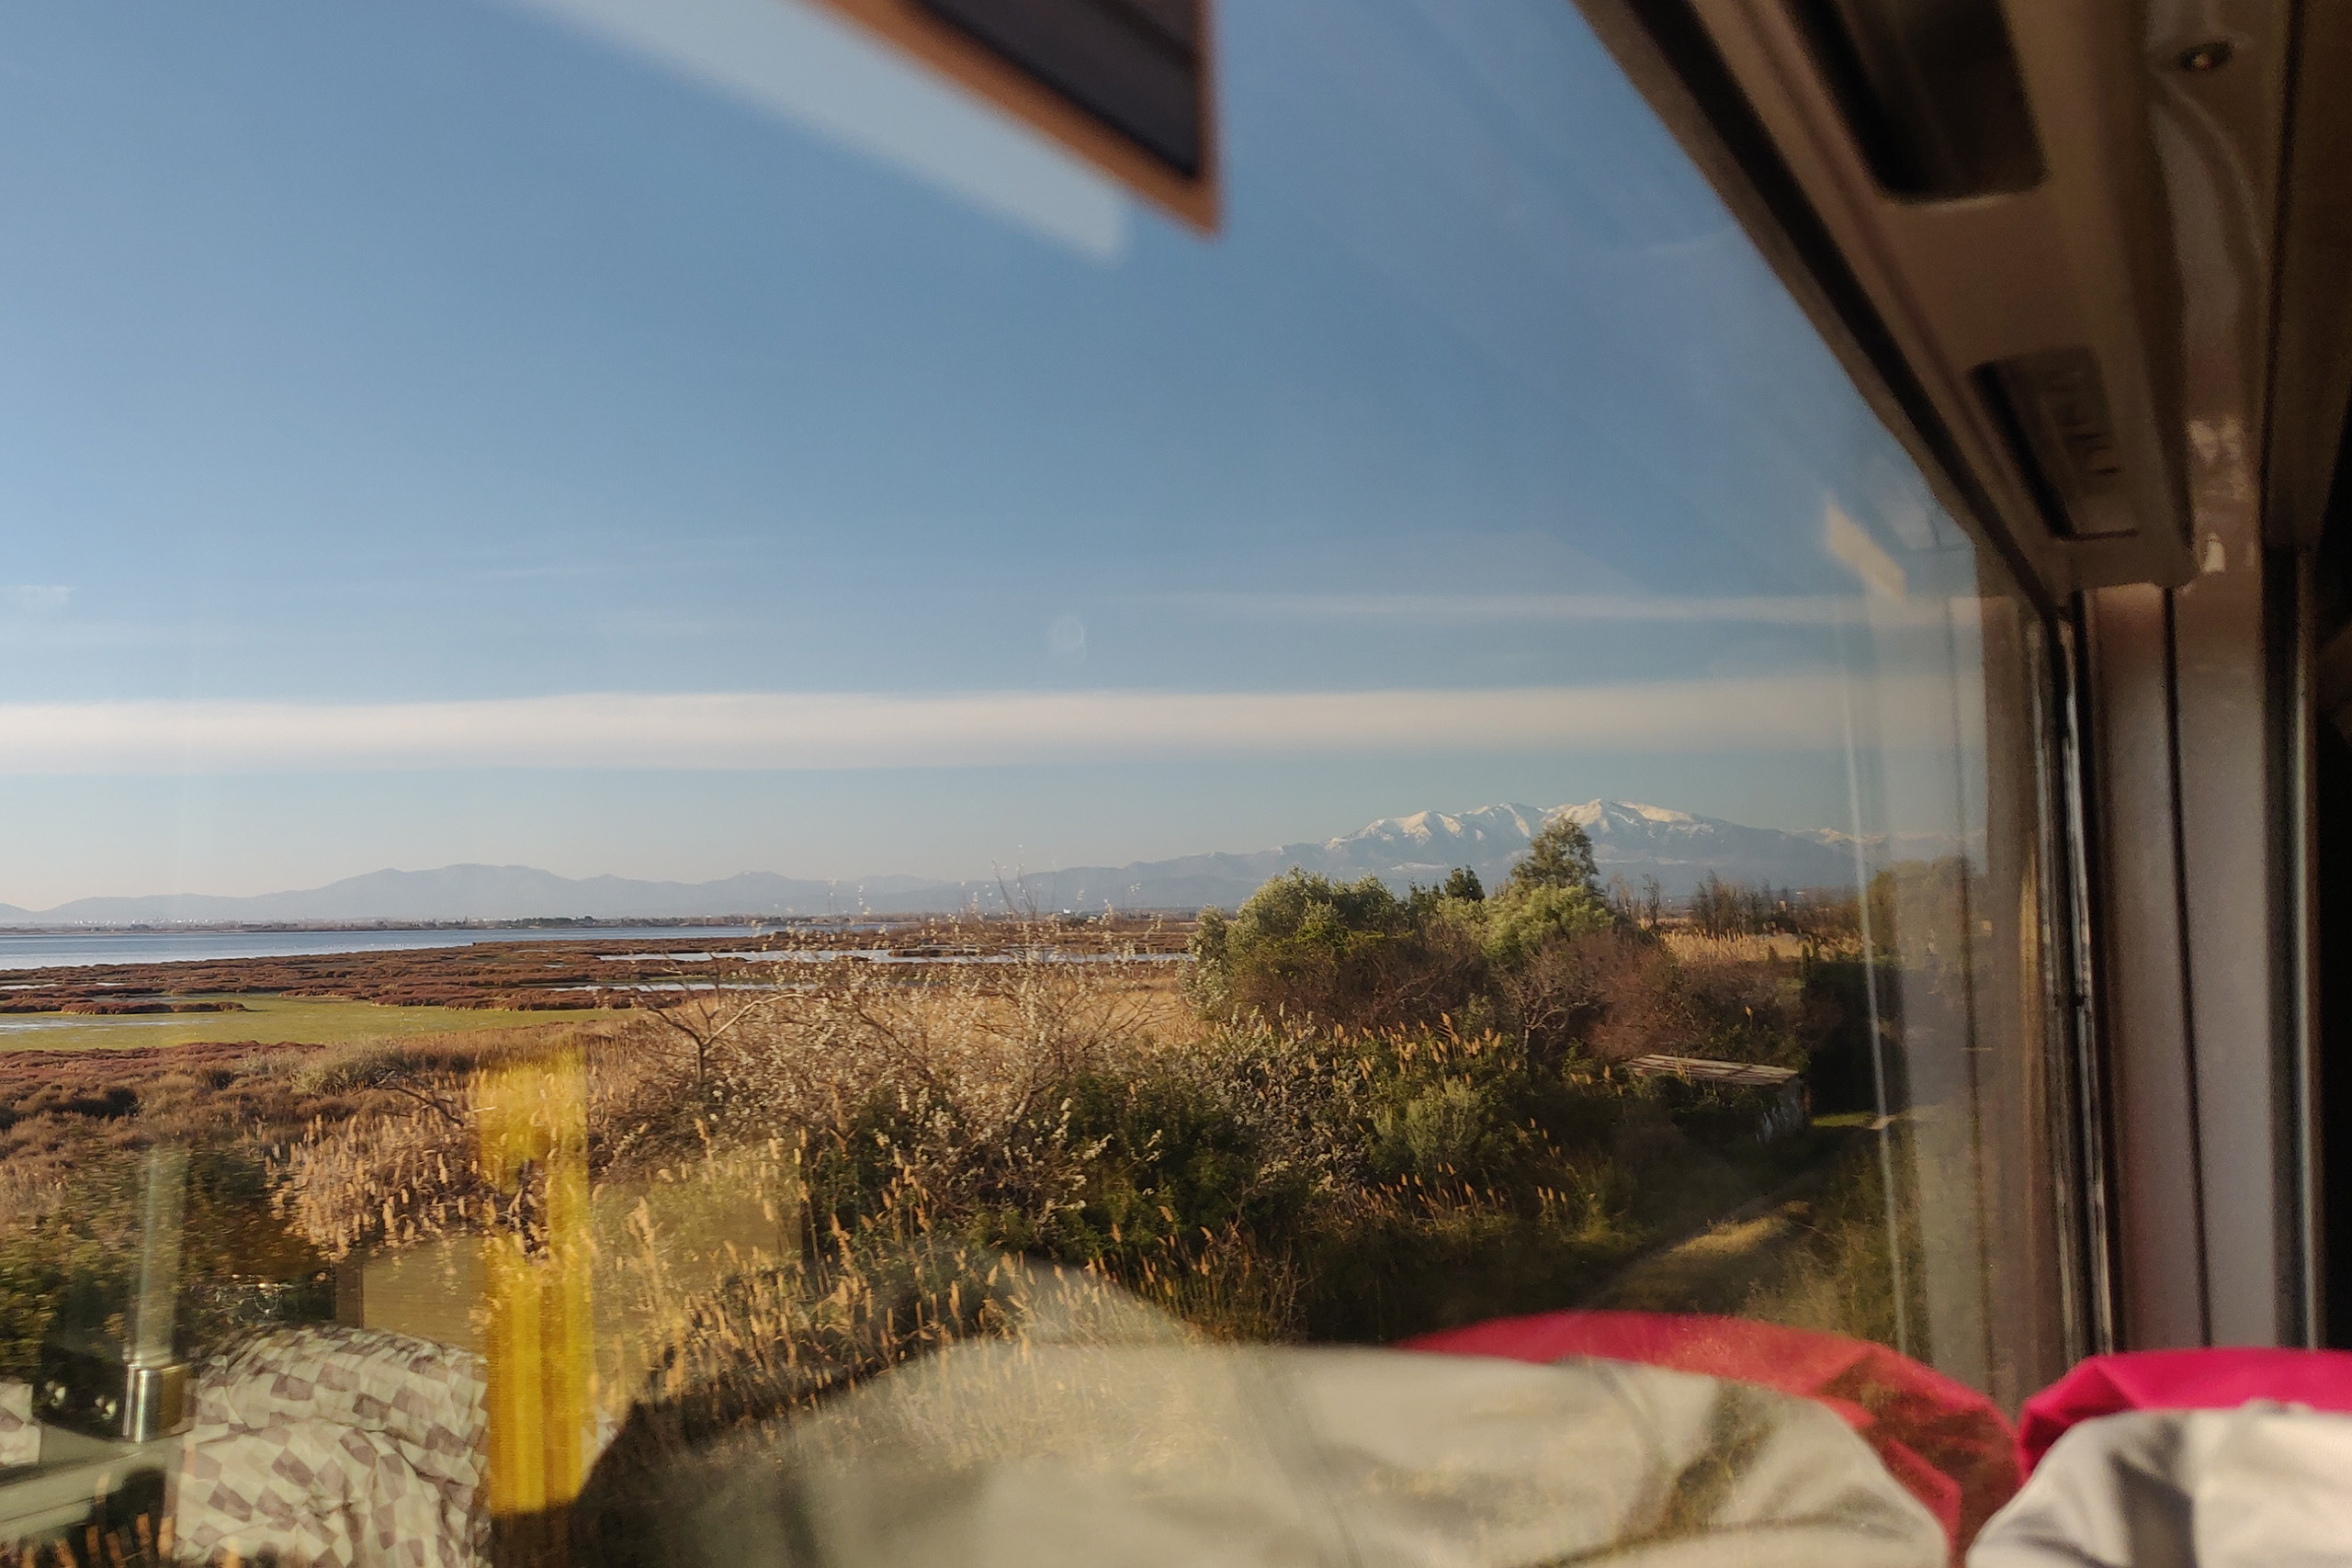 Blick aus dem Zugfenster: Die Küste Südfrankreichs mit den schneebedeckten Pyrenäen am Horizont.